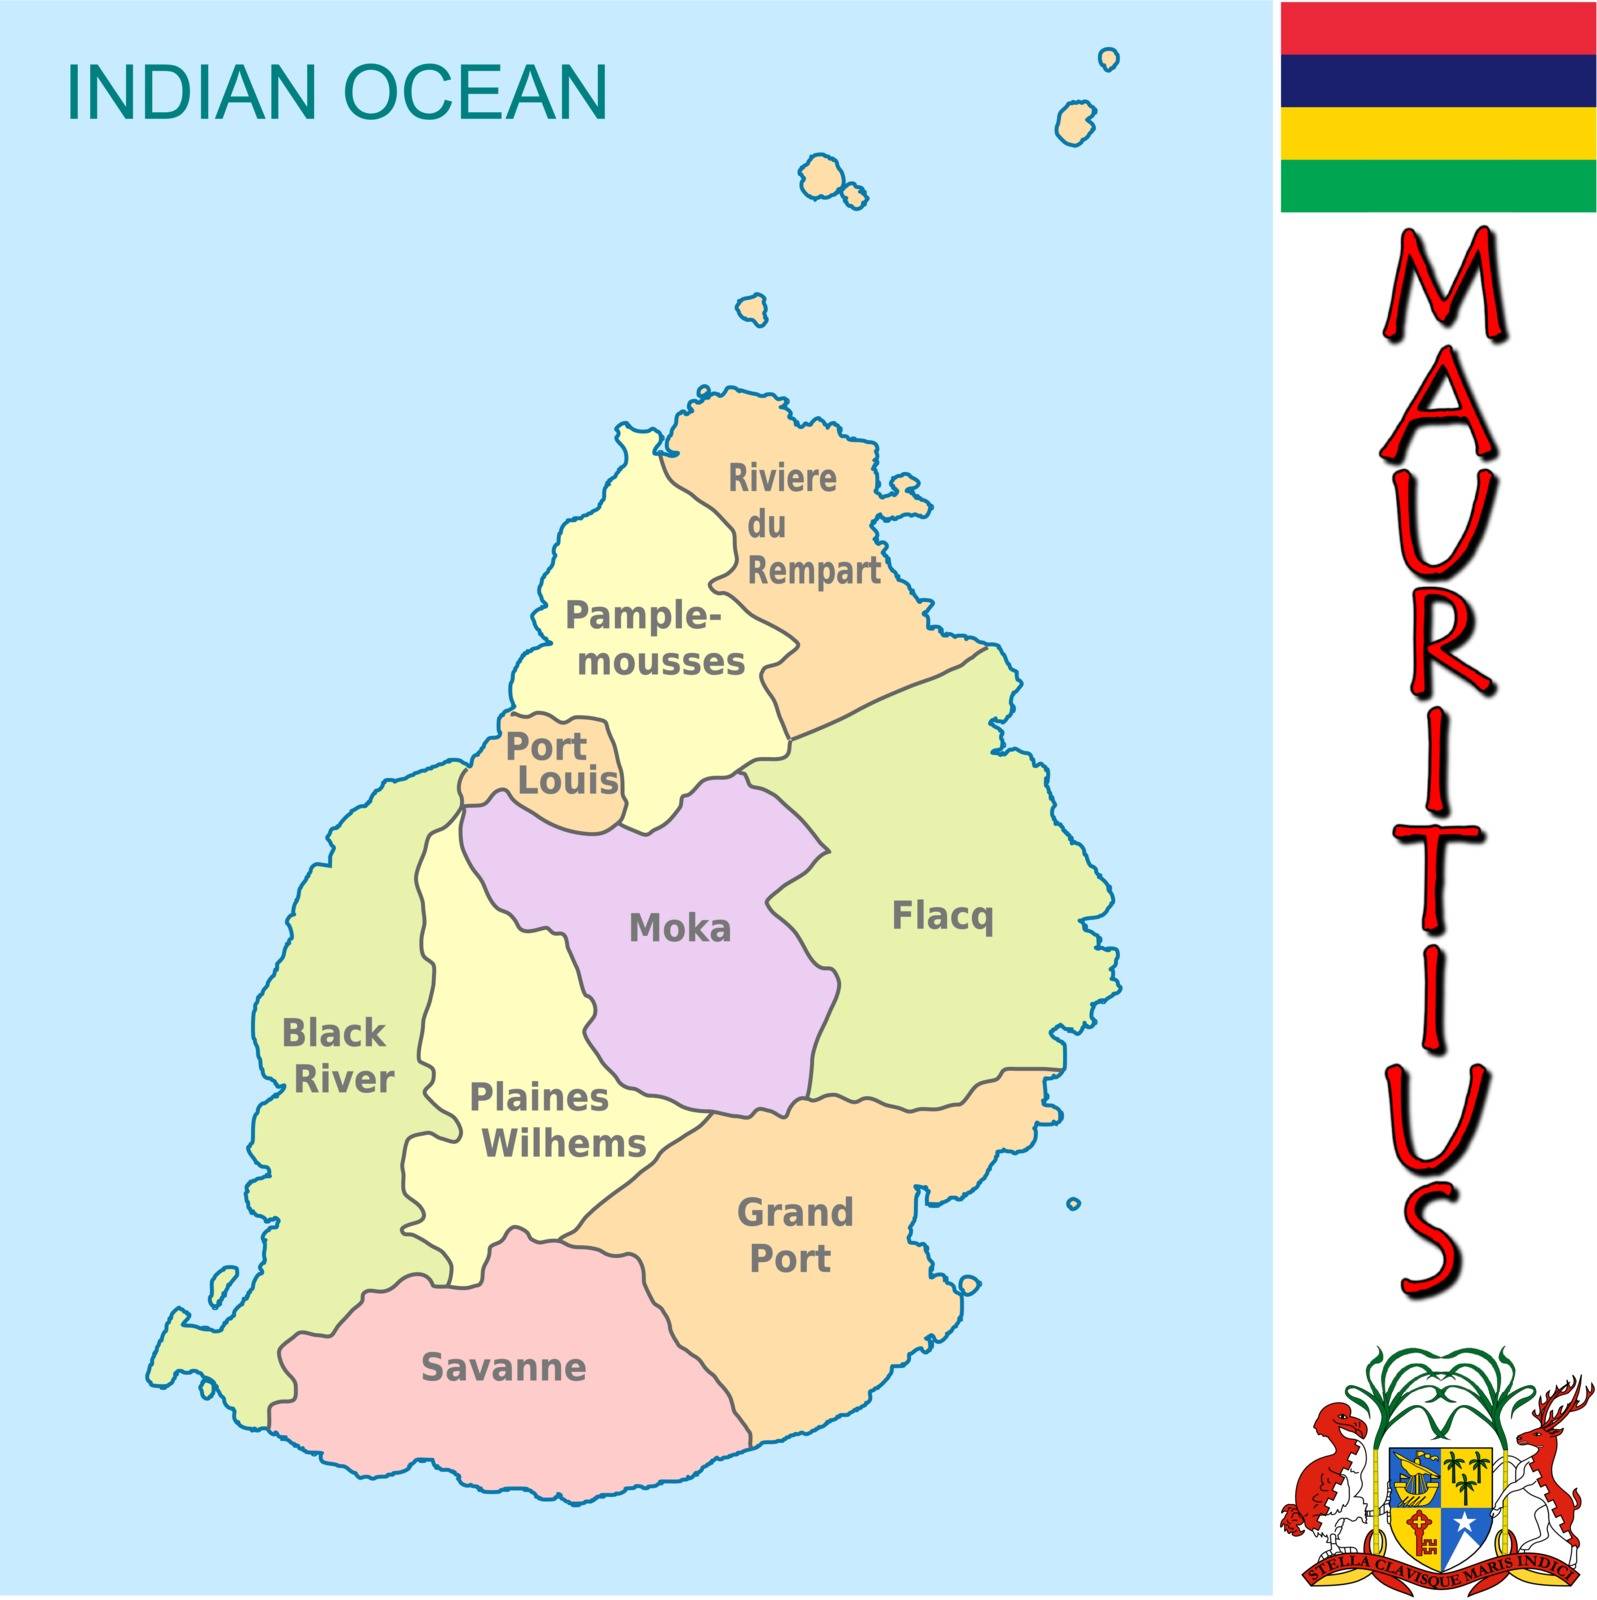 Mauritius divisions